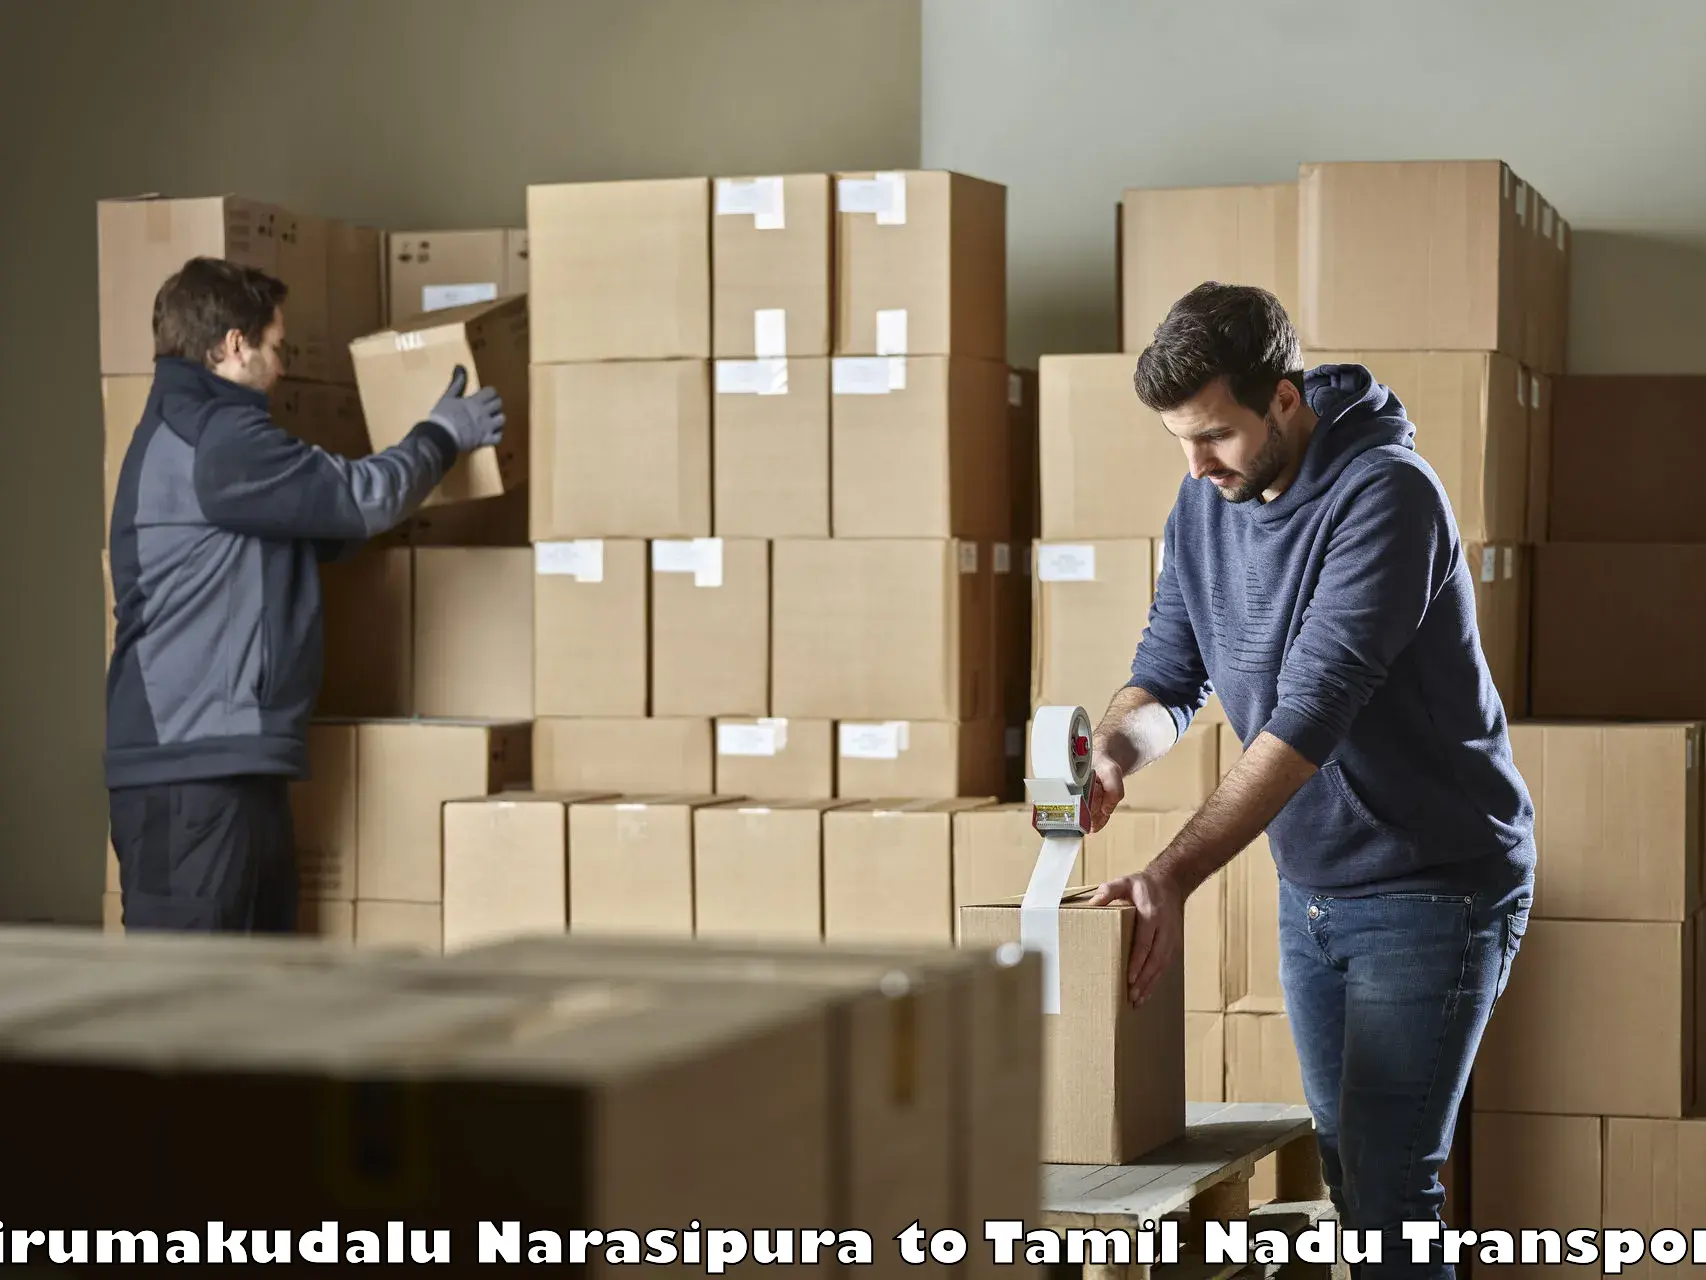 Furniture transport service Tirumakudalu Narasipura to Musiri